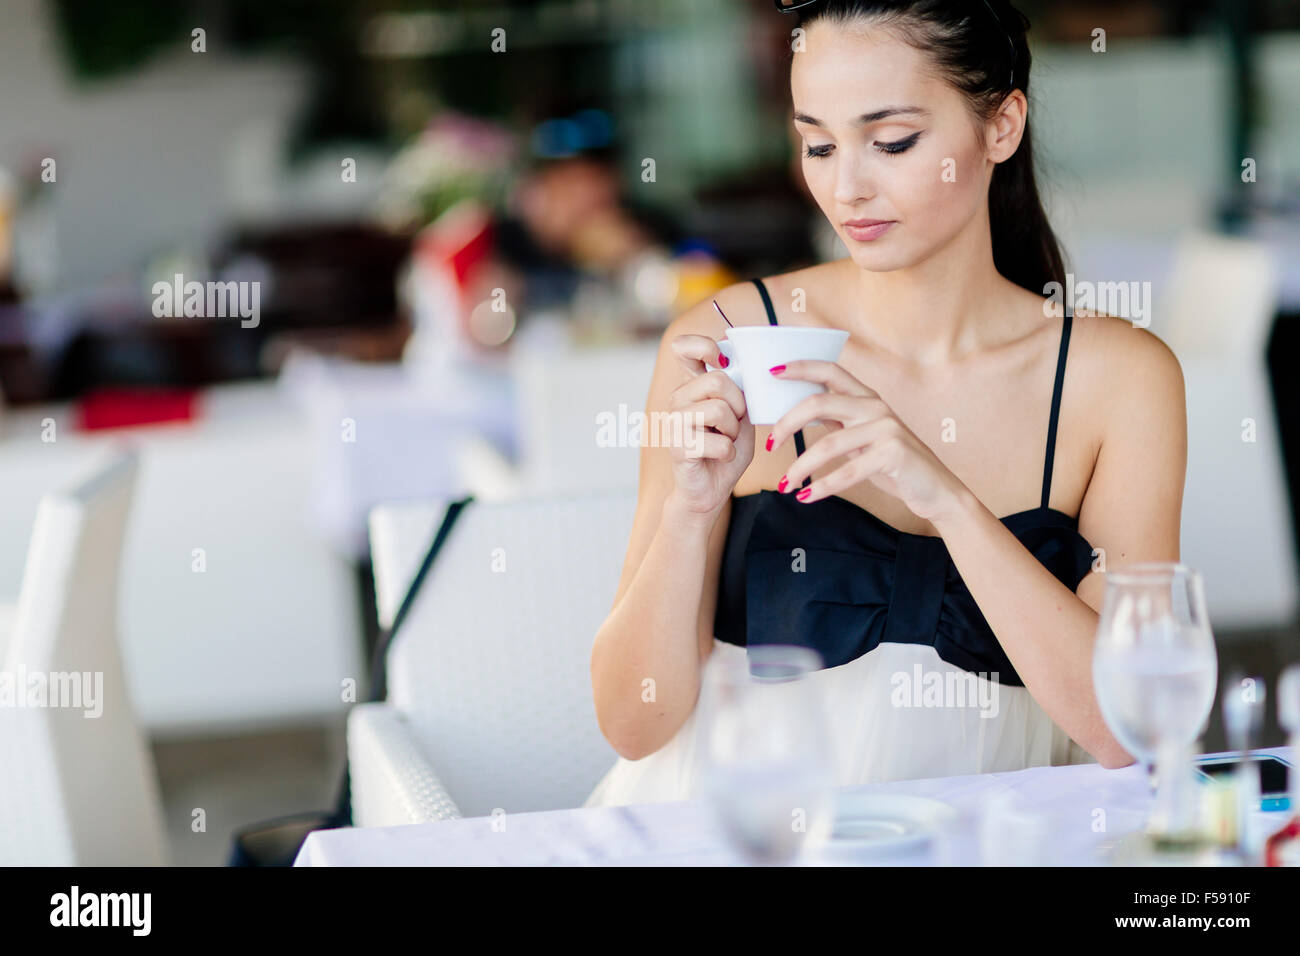 Schöne Frau trinkt Tee im Restaurant während des Wartens auf ihre Mahlzeit Stockfoto